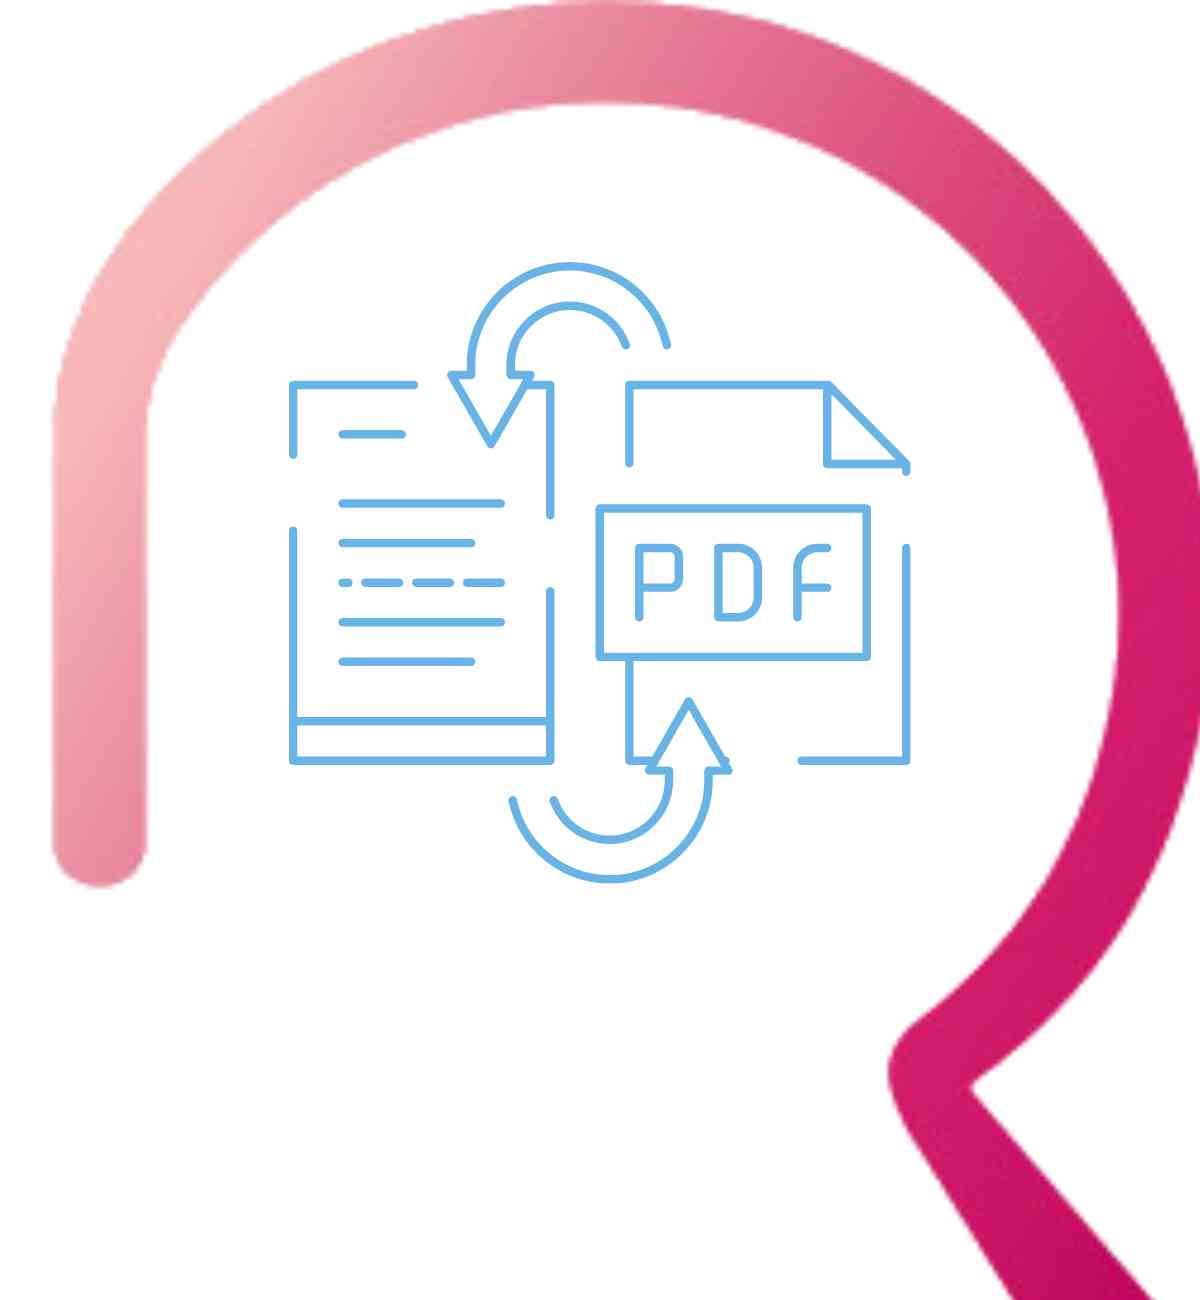 تحويل من pdf إلى word | ثلاث طرق سهلة للتحويل مع إجراء التعديلات
 
